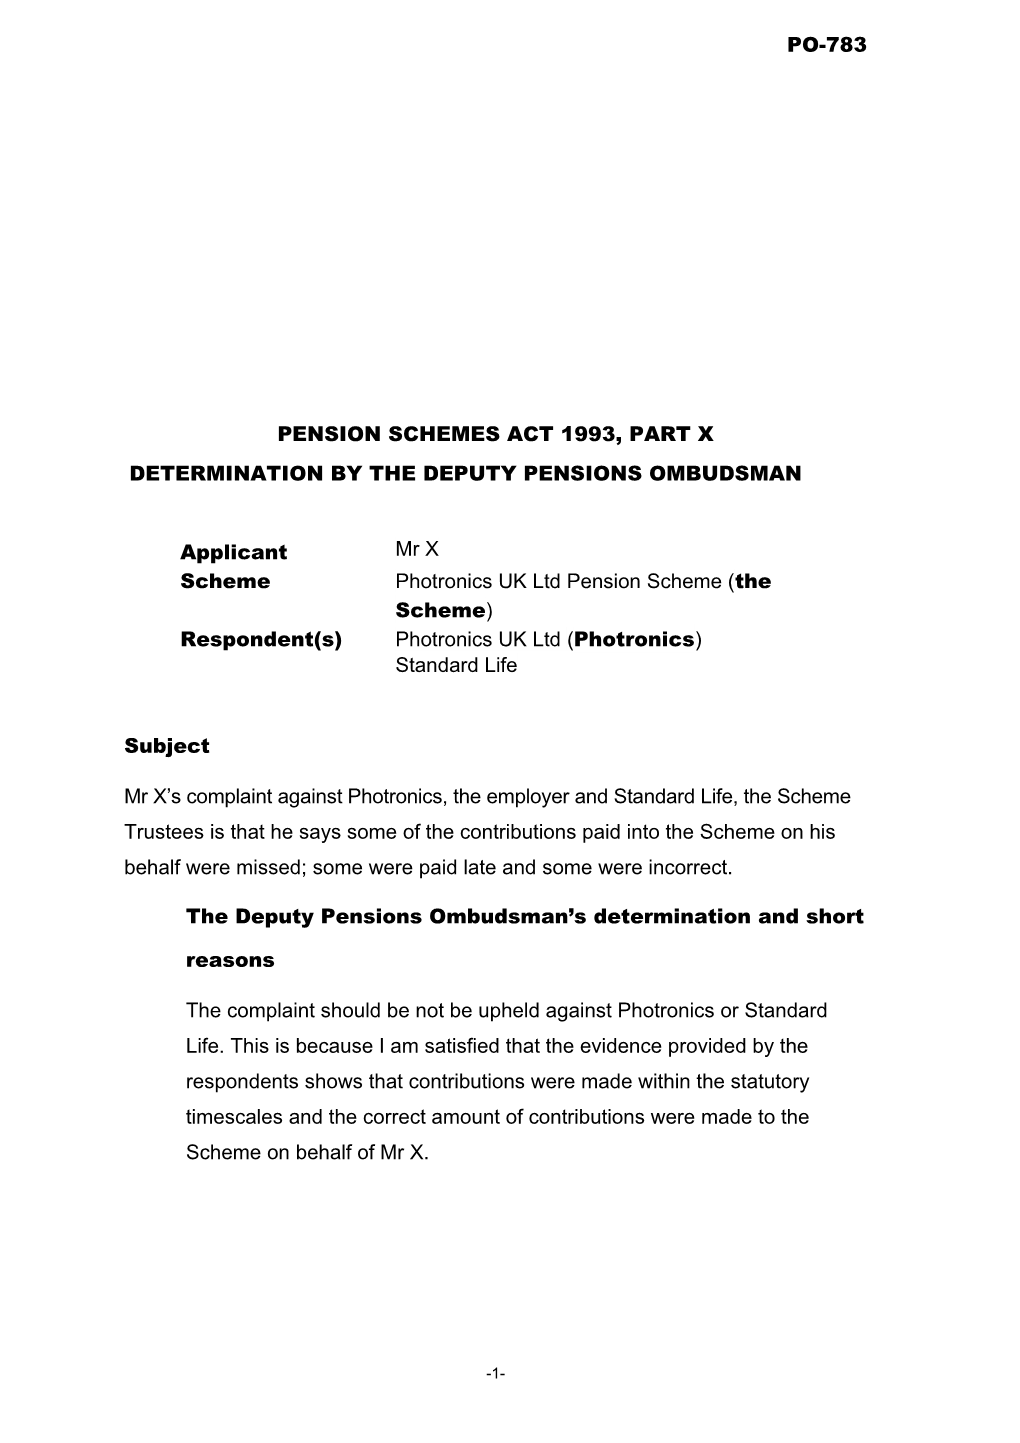 Pension Schemes Act 1993, Part X s95